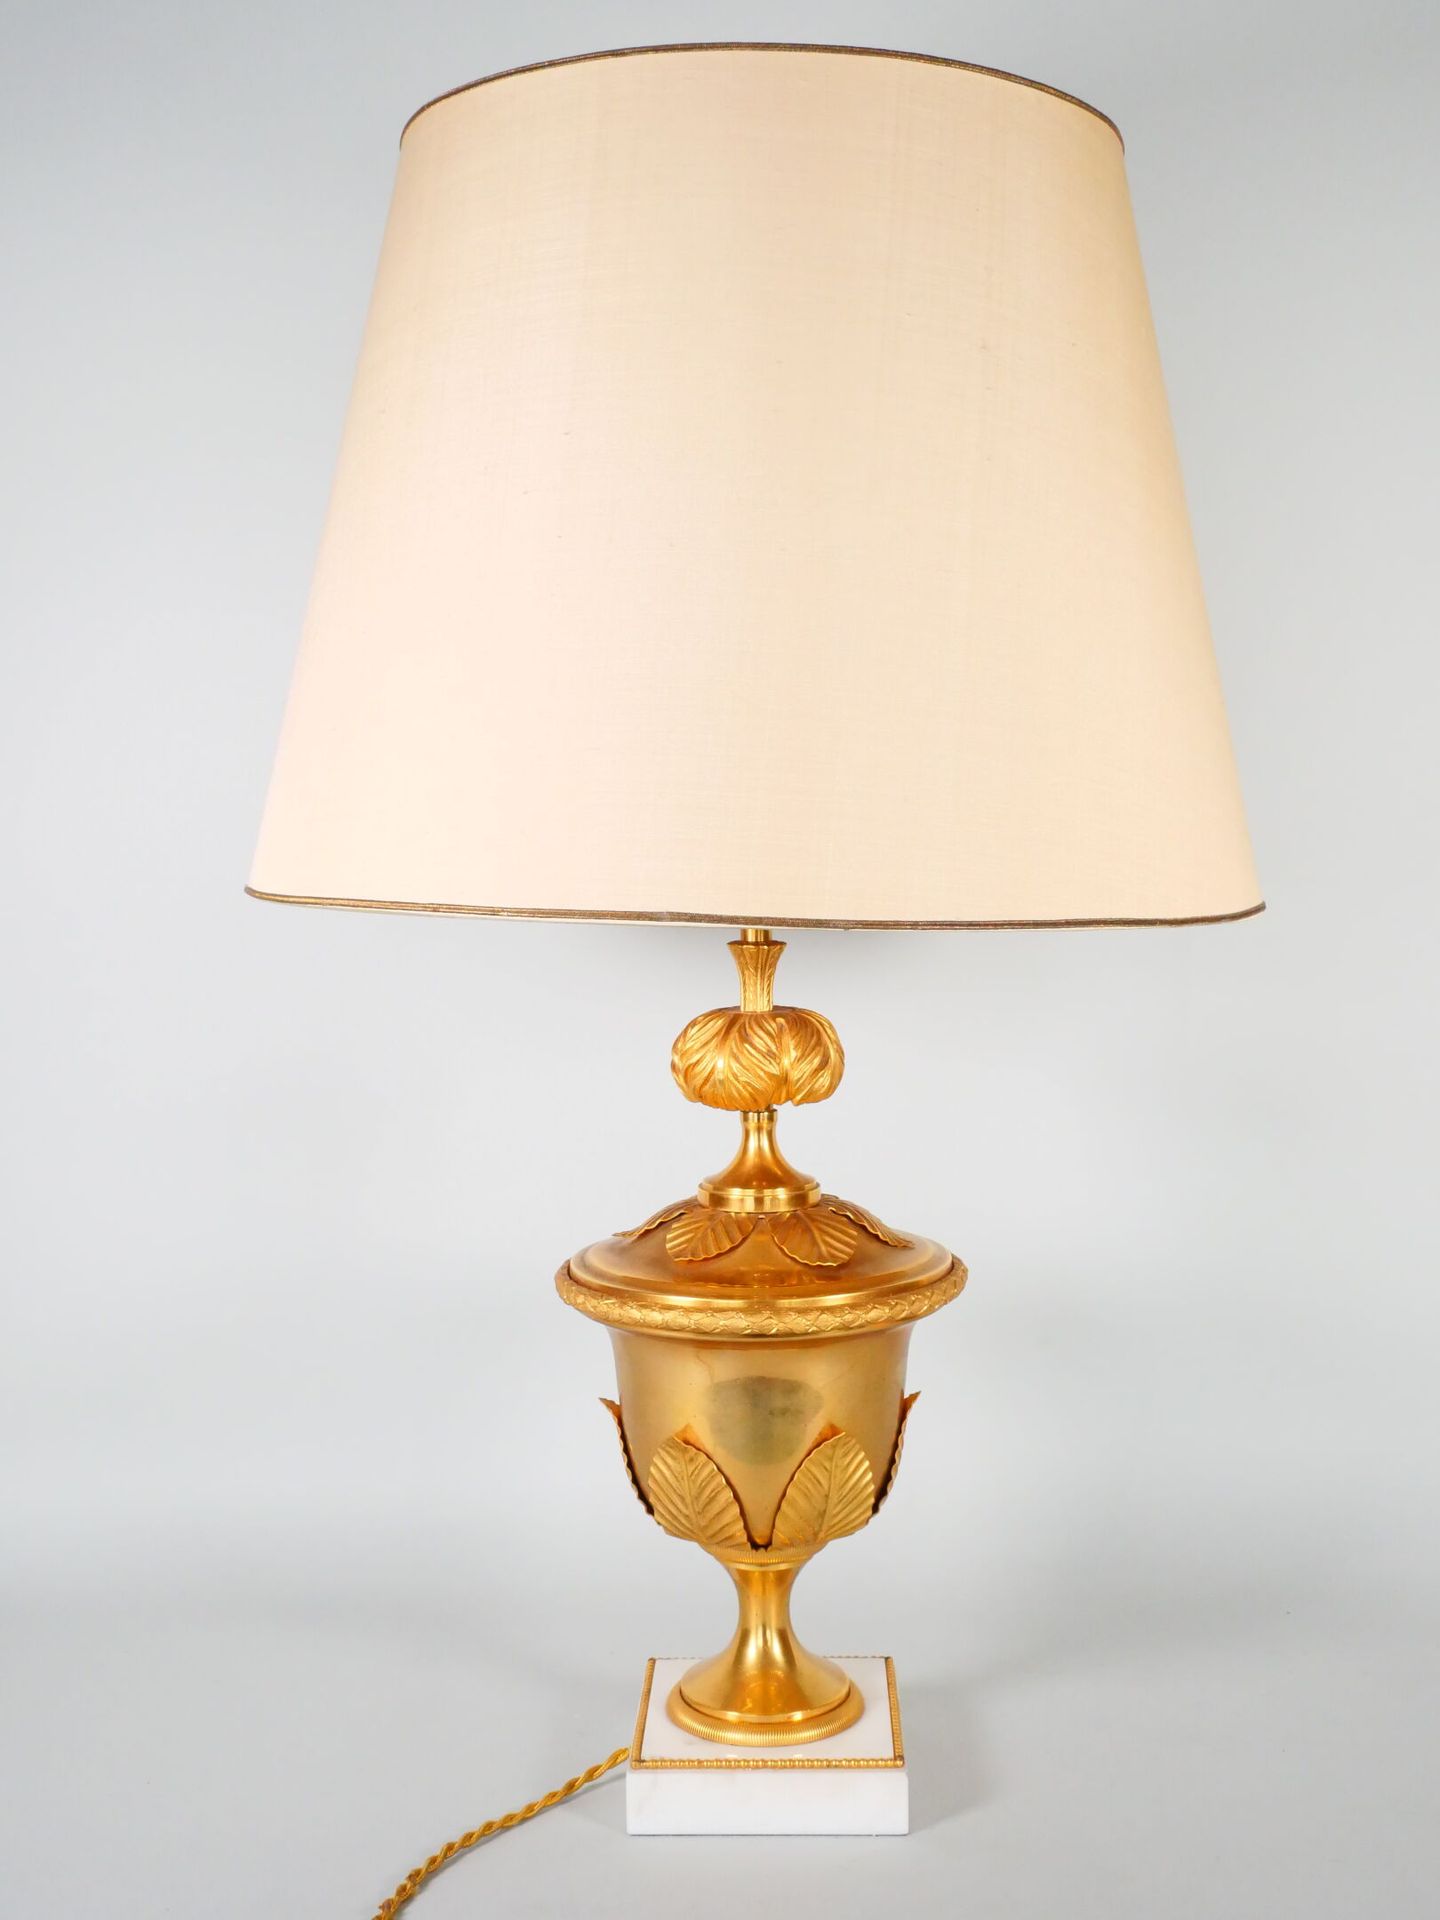 Null 一个美第奇花瓶形的灯架，由青铜、黄铜和鎏金金属制成，放在一个方形的白色大理石底座上。 
路易十六风格的现代作品。
灯座的高度：35厘米 
总高度：66&hellip;